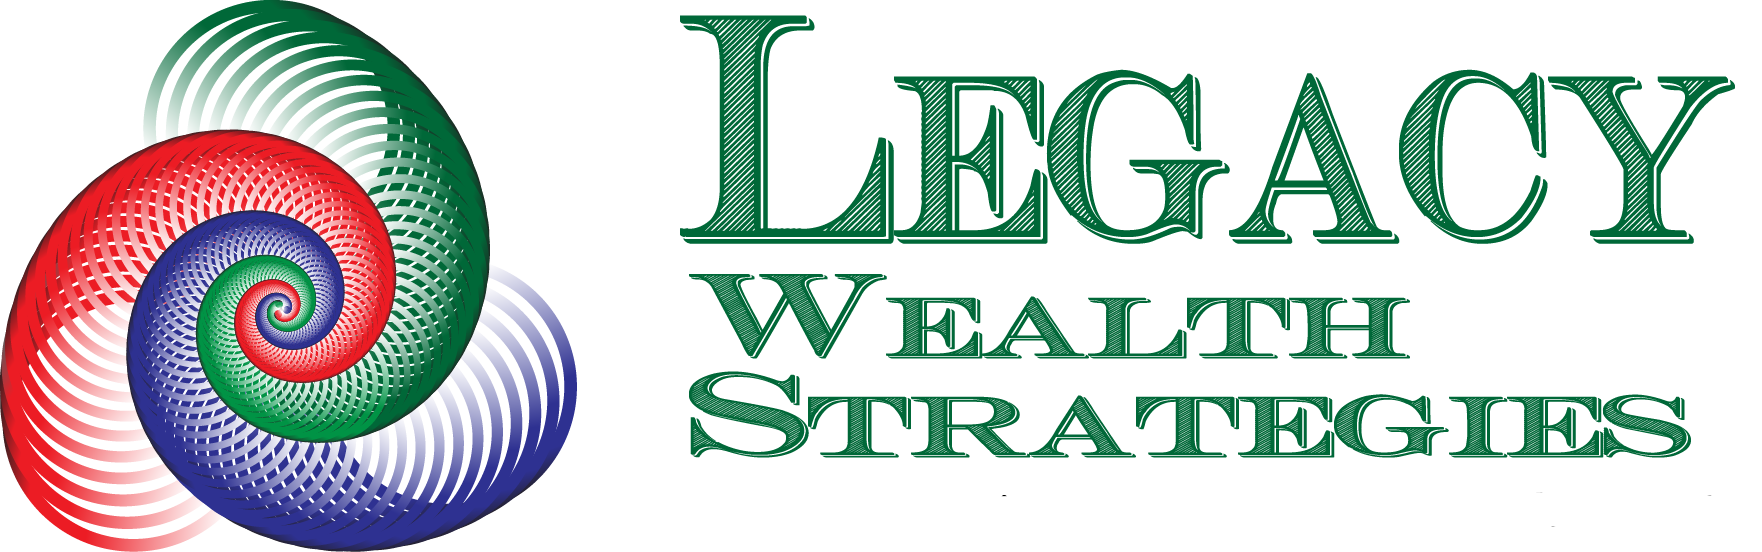 Legacy Wealth Strategies